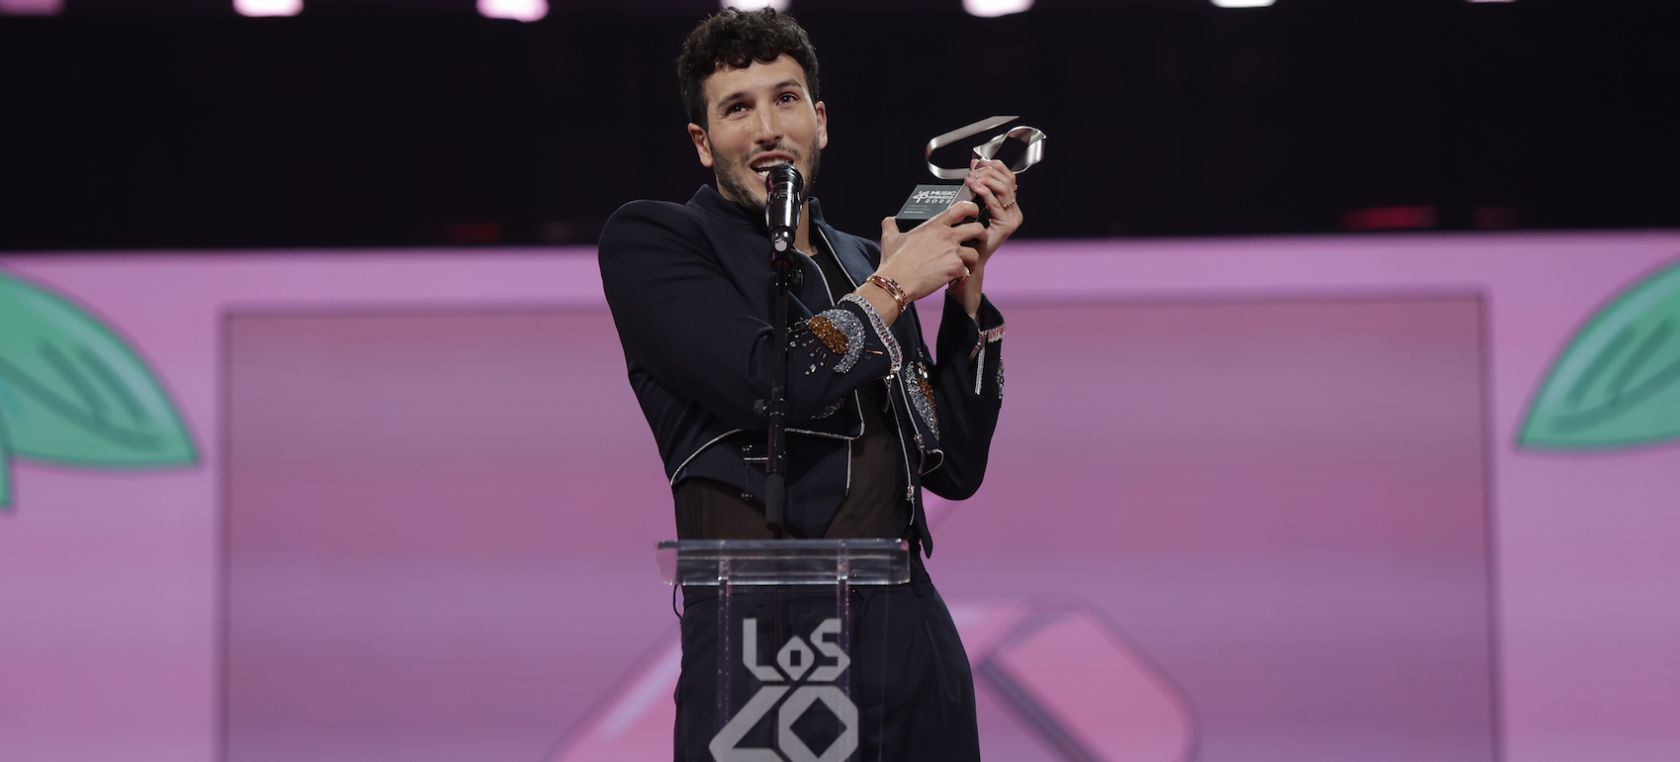 Sebastián Yatra emocionó con su discurso en LOS40 Music Awards: “Es duro cuando ves tantas cosas en las redes”